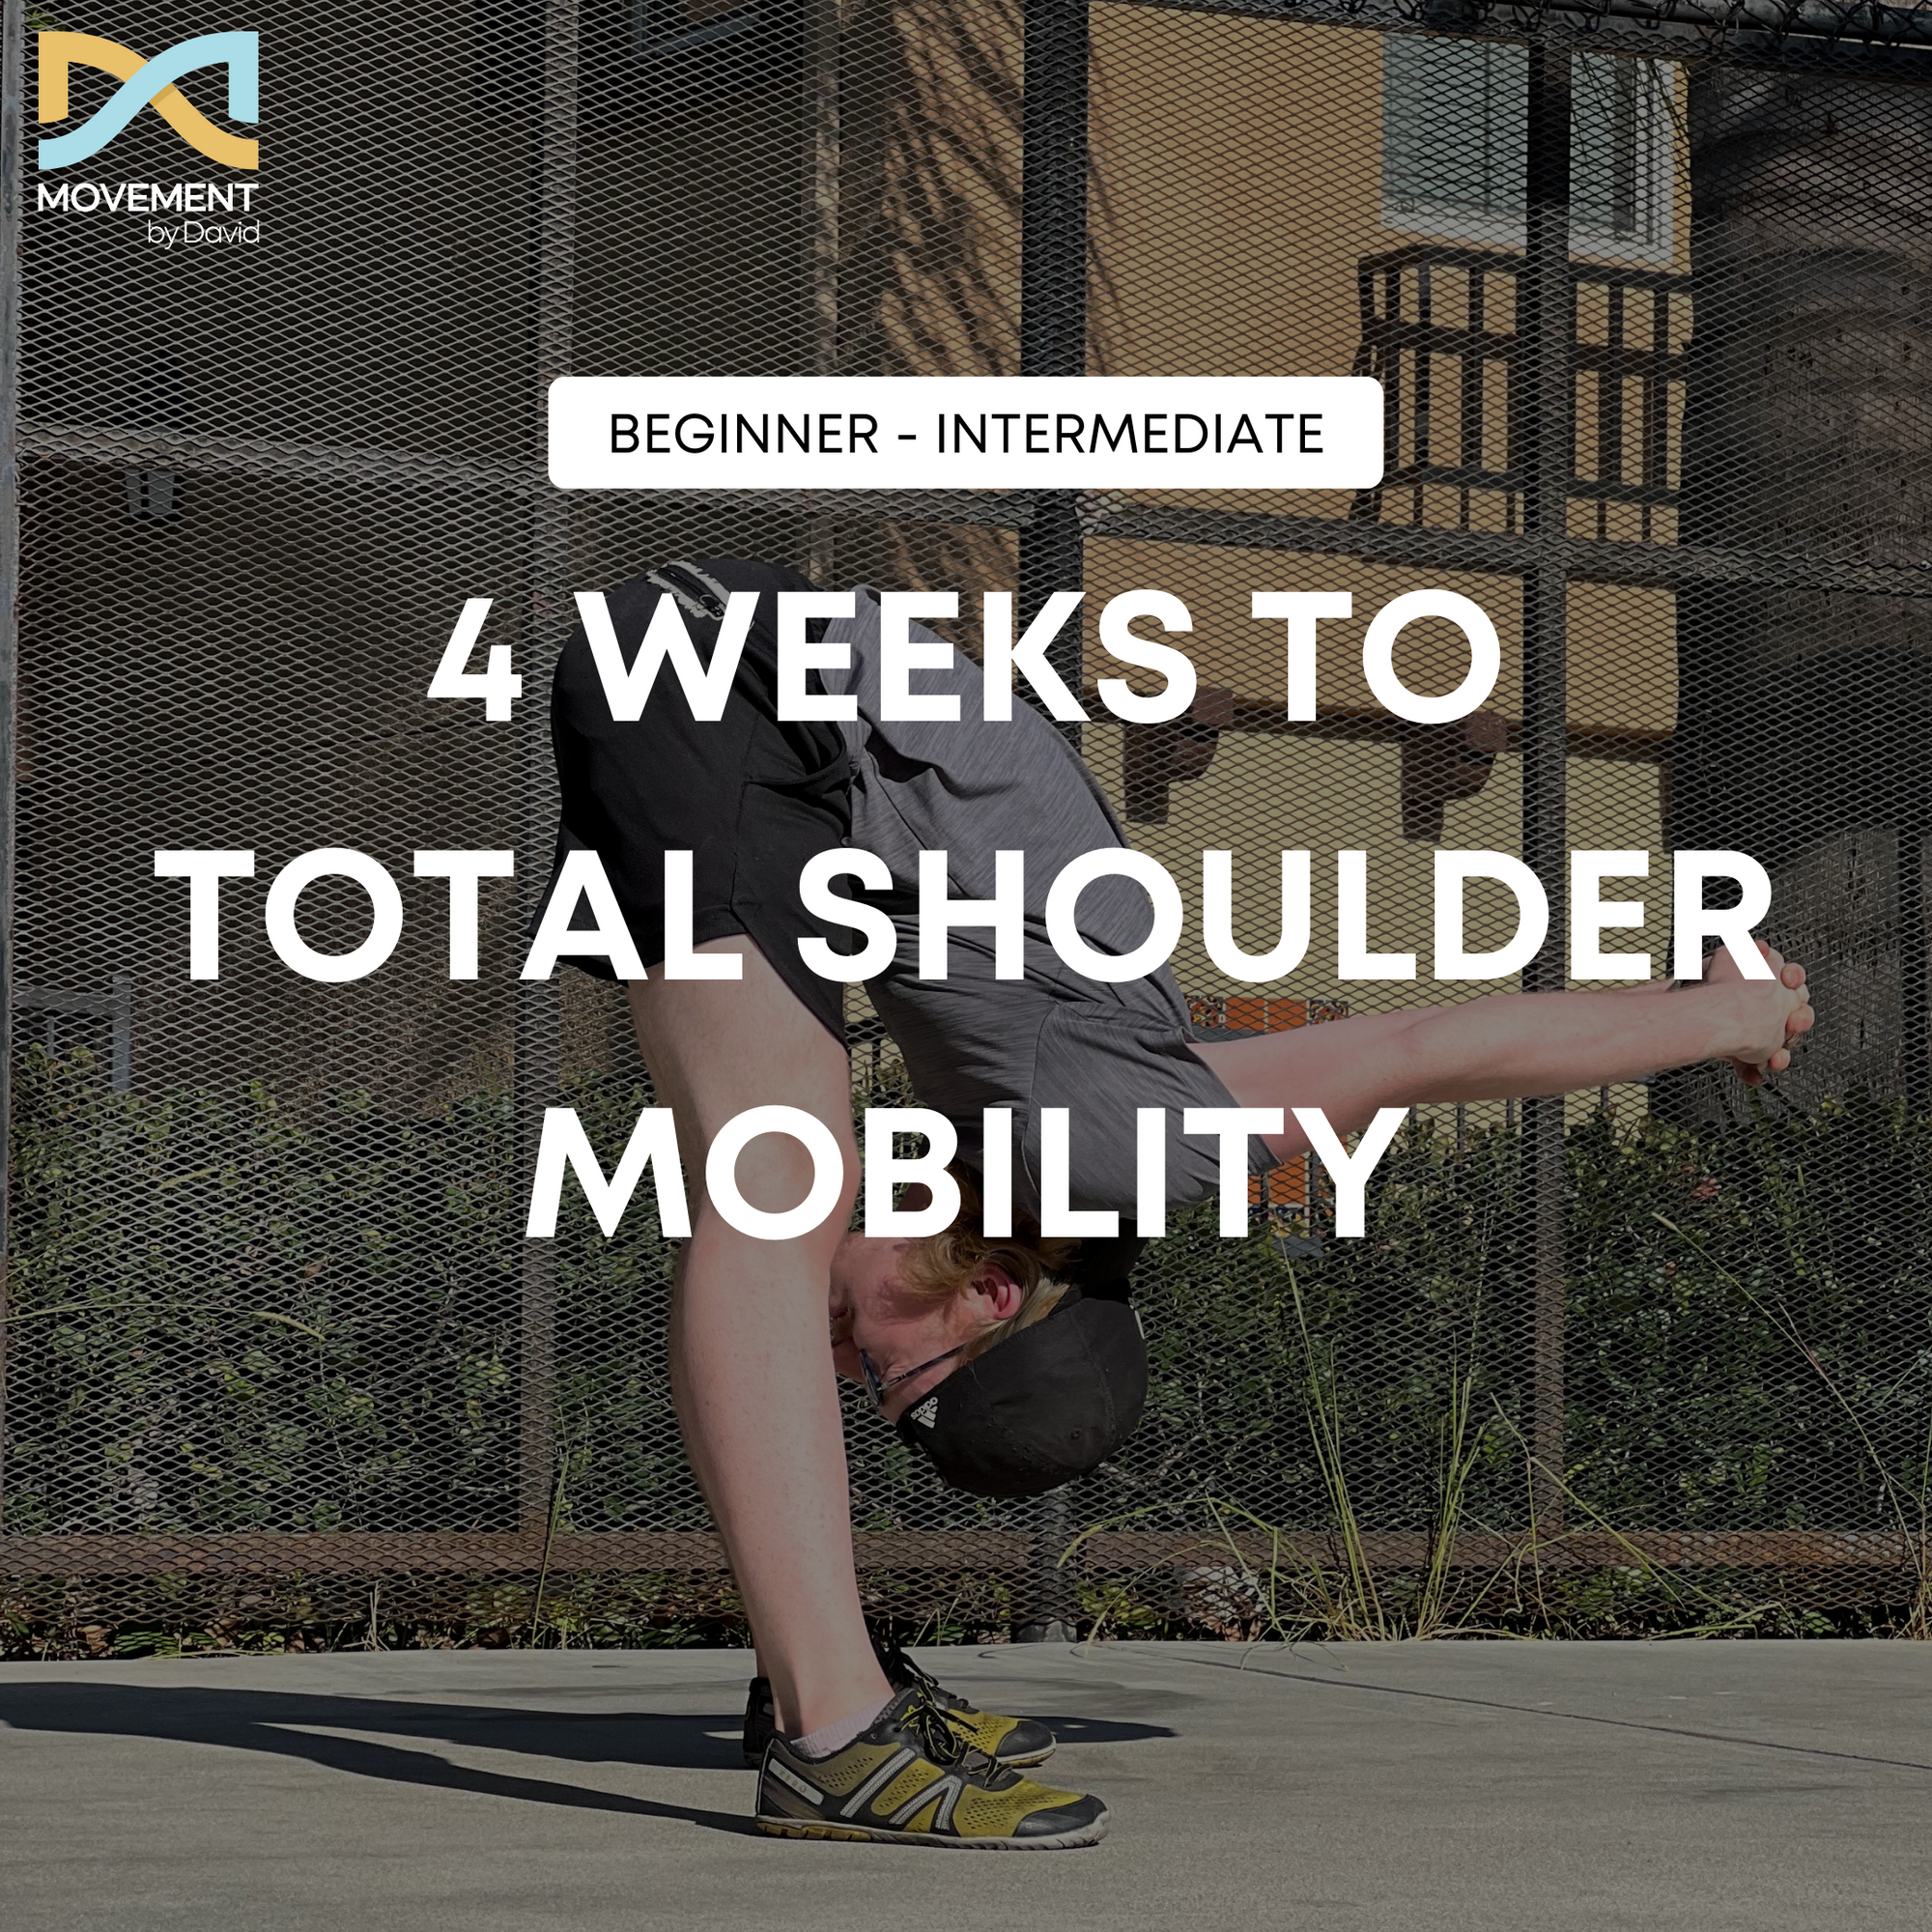 MBD Total Shoulder Mobility